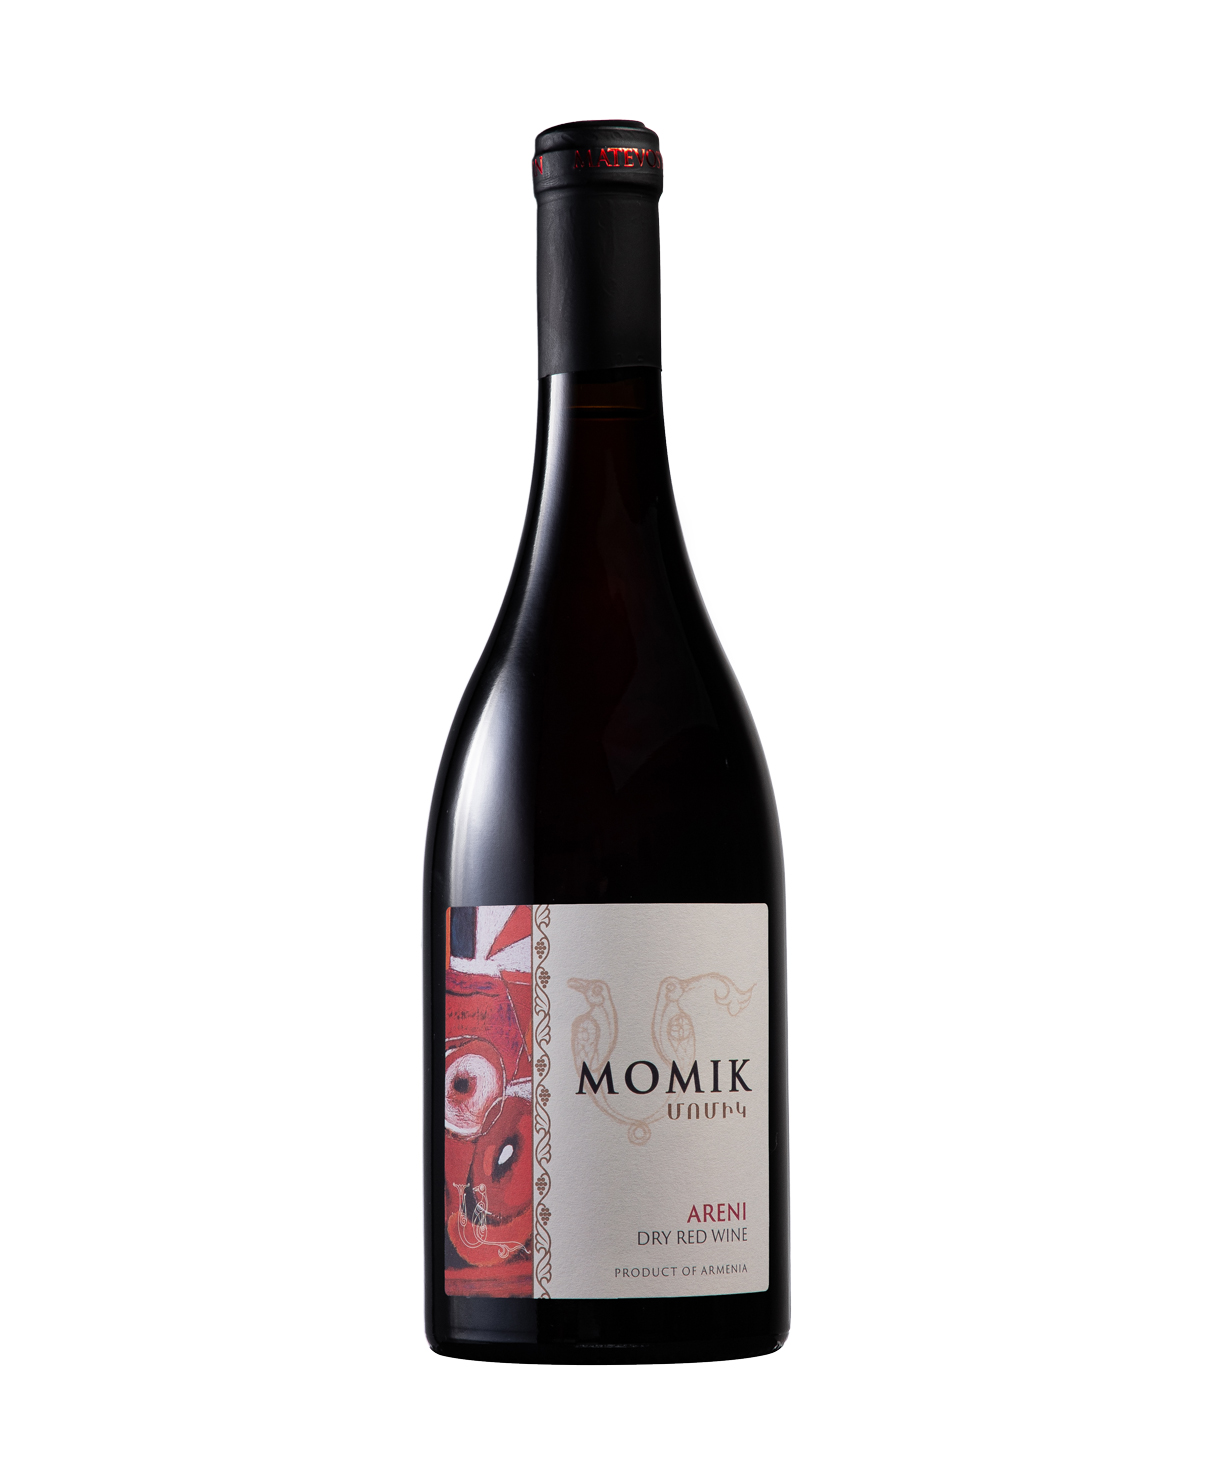 Wine «Matevosyan» Momik, red, dry, 13%, 750 ml